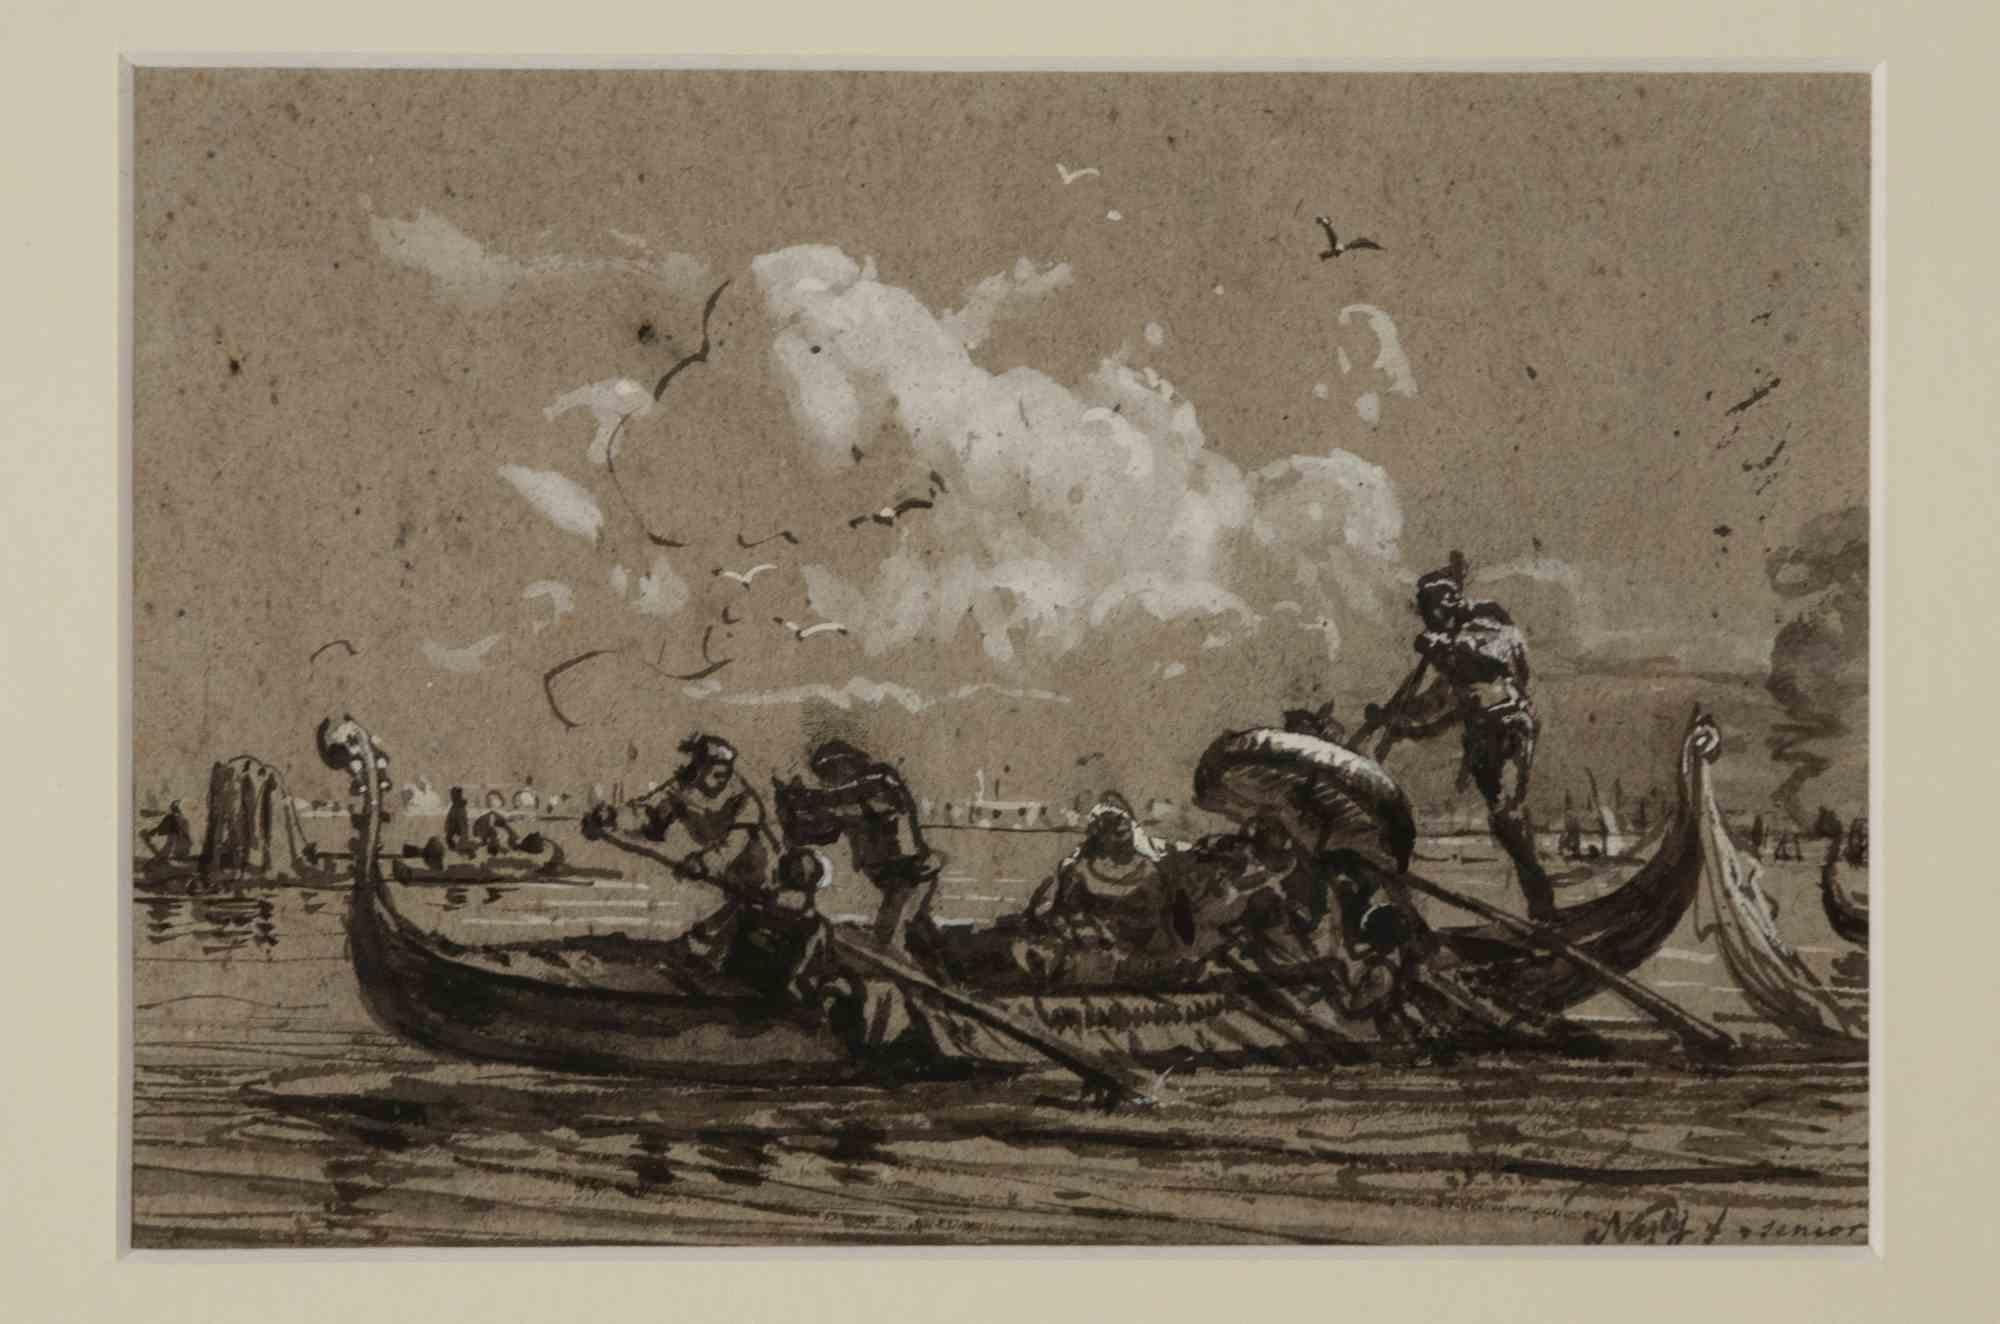 Venedig ist ein Originalkunstwerk, das in den 1870er Jahren von Friedrich Paul Nerly (1842-1919) geschaffen wurde.

Aquarell. Handsigniert am unteren rechten Rand.

Inklusive eines schönen vergoldeten Rahmens.